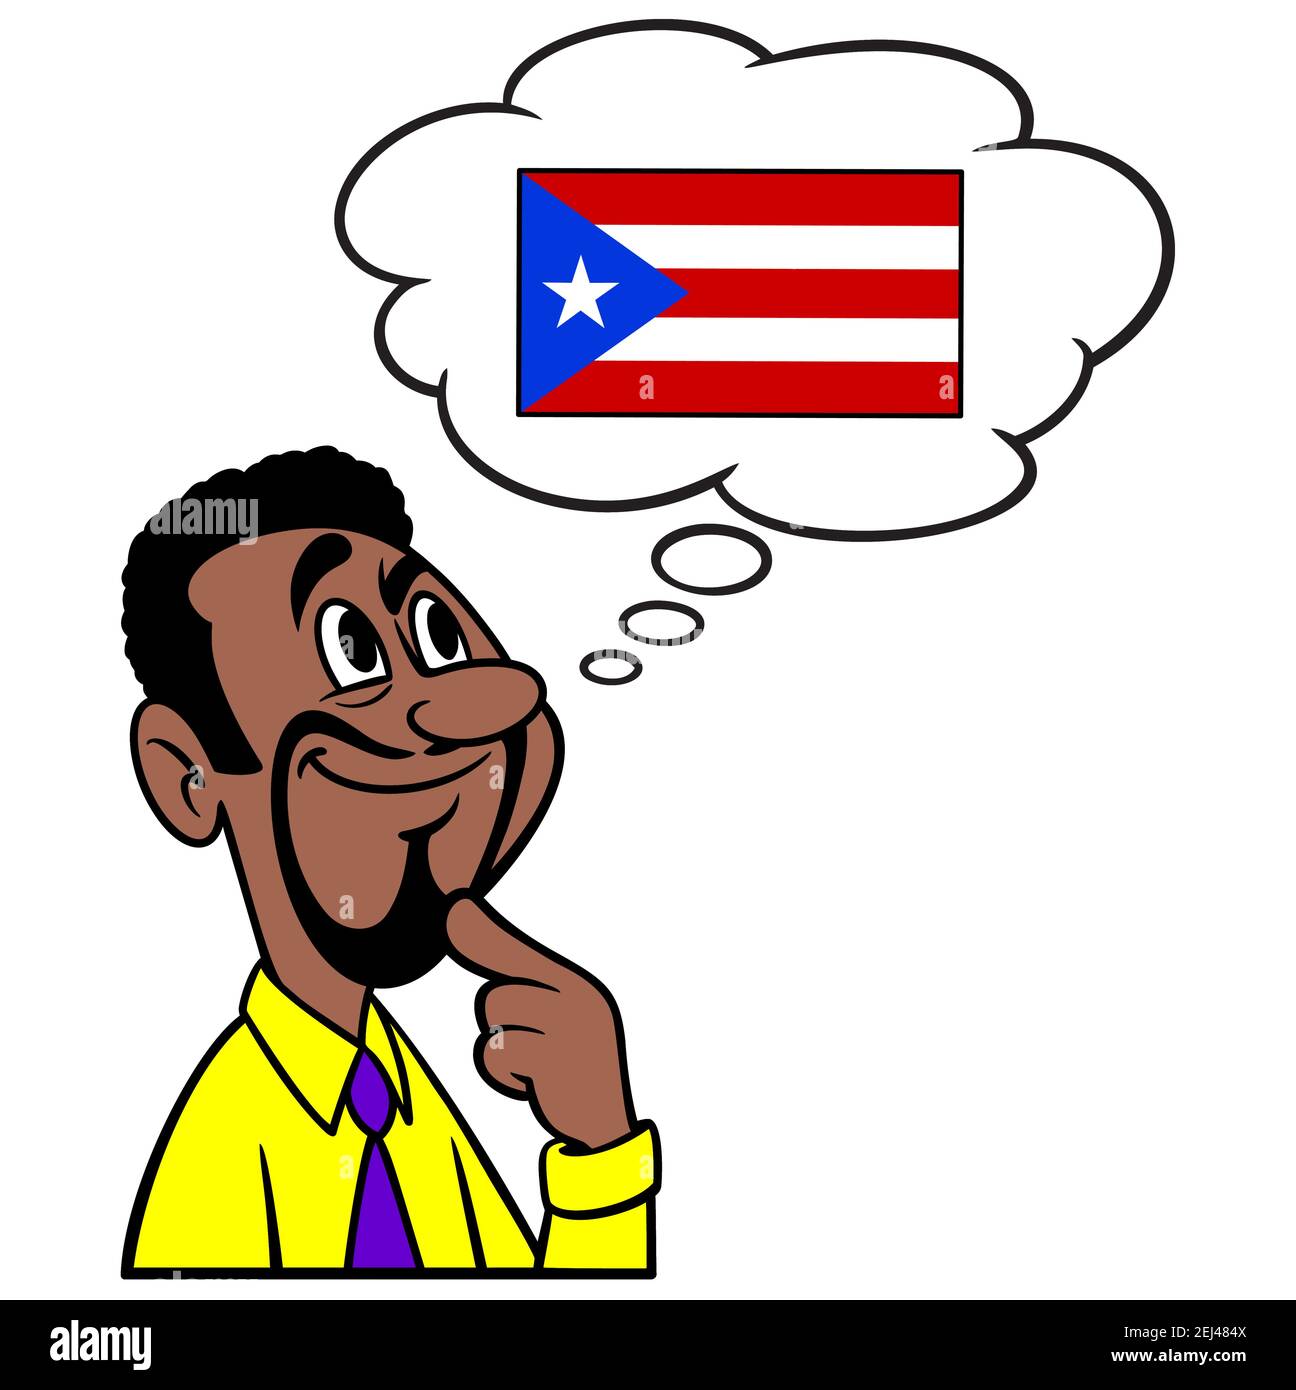 Mann, der an Puerto Rico denkt - EINE Cartoon-Illustration eines Mannes, der an Puerto Rico denkt. Stock Vektor